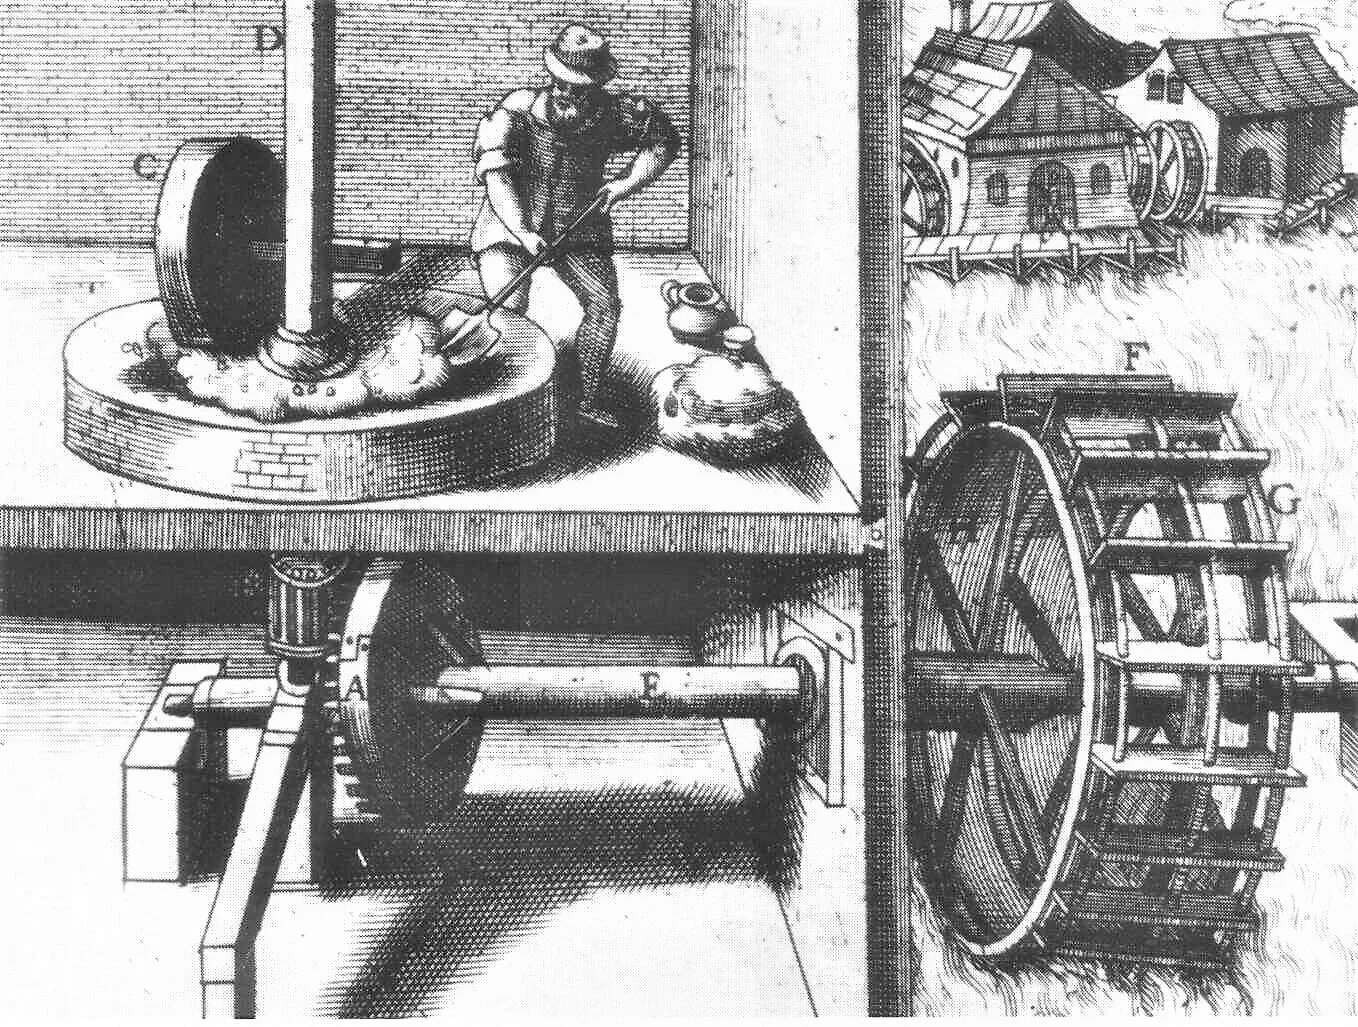 Механизмы нового времени. Пороховая мельница 17 века. Жернова мельница в 1900 году. Мельница с водяным колесом 15 века. Жерновая водяная мельница.